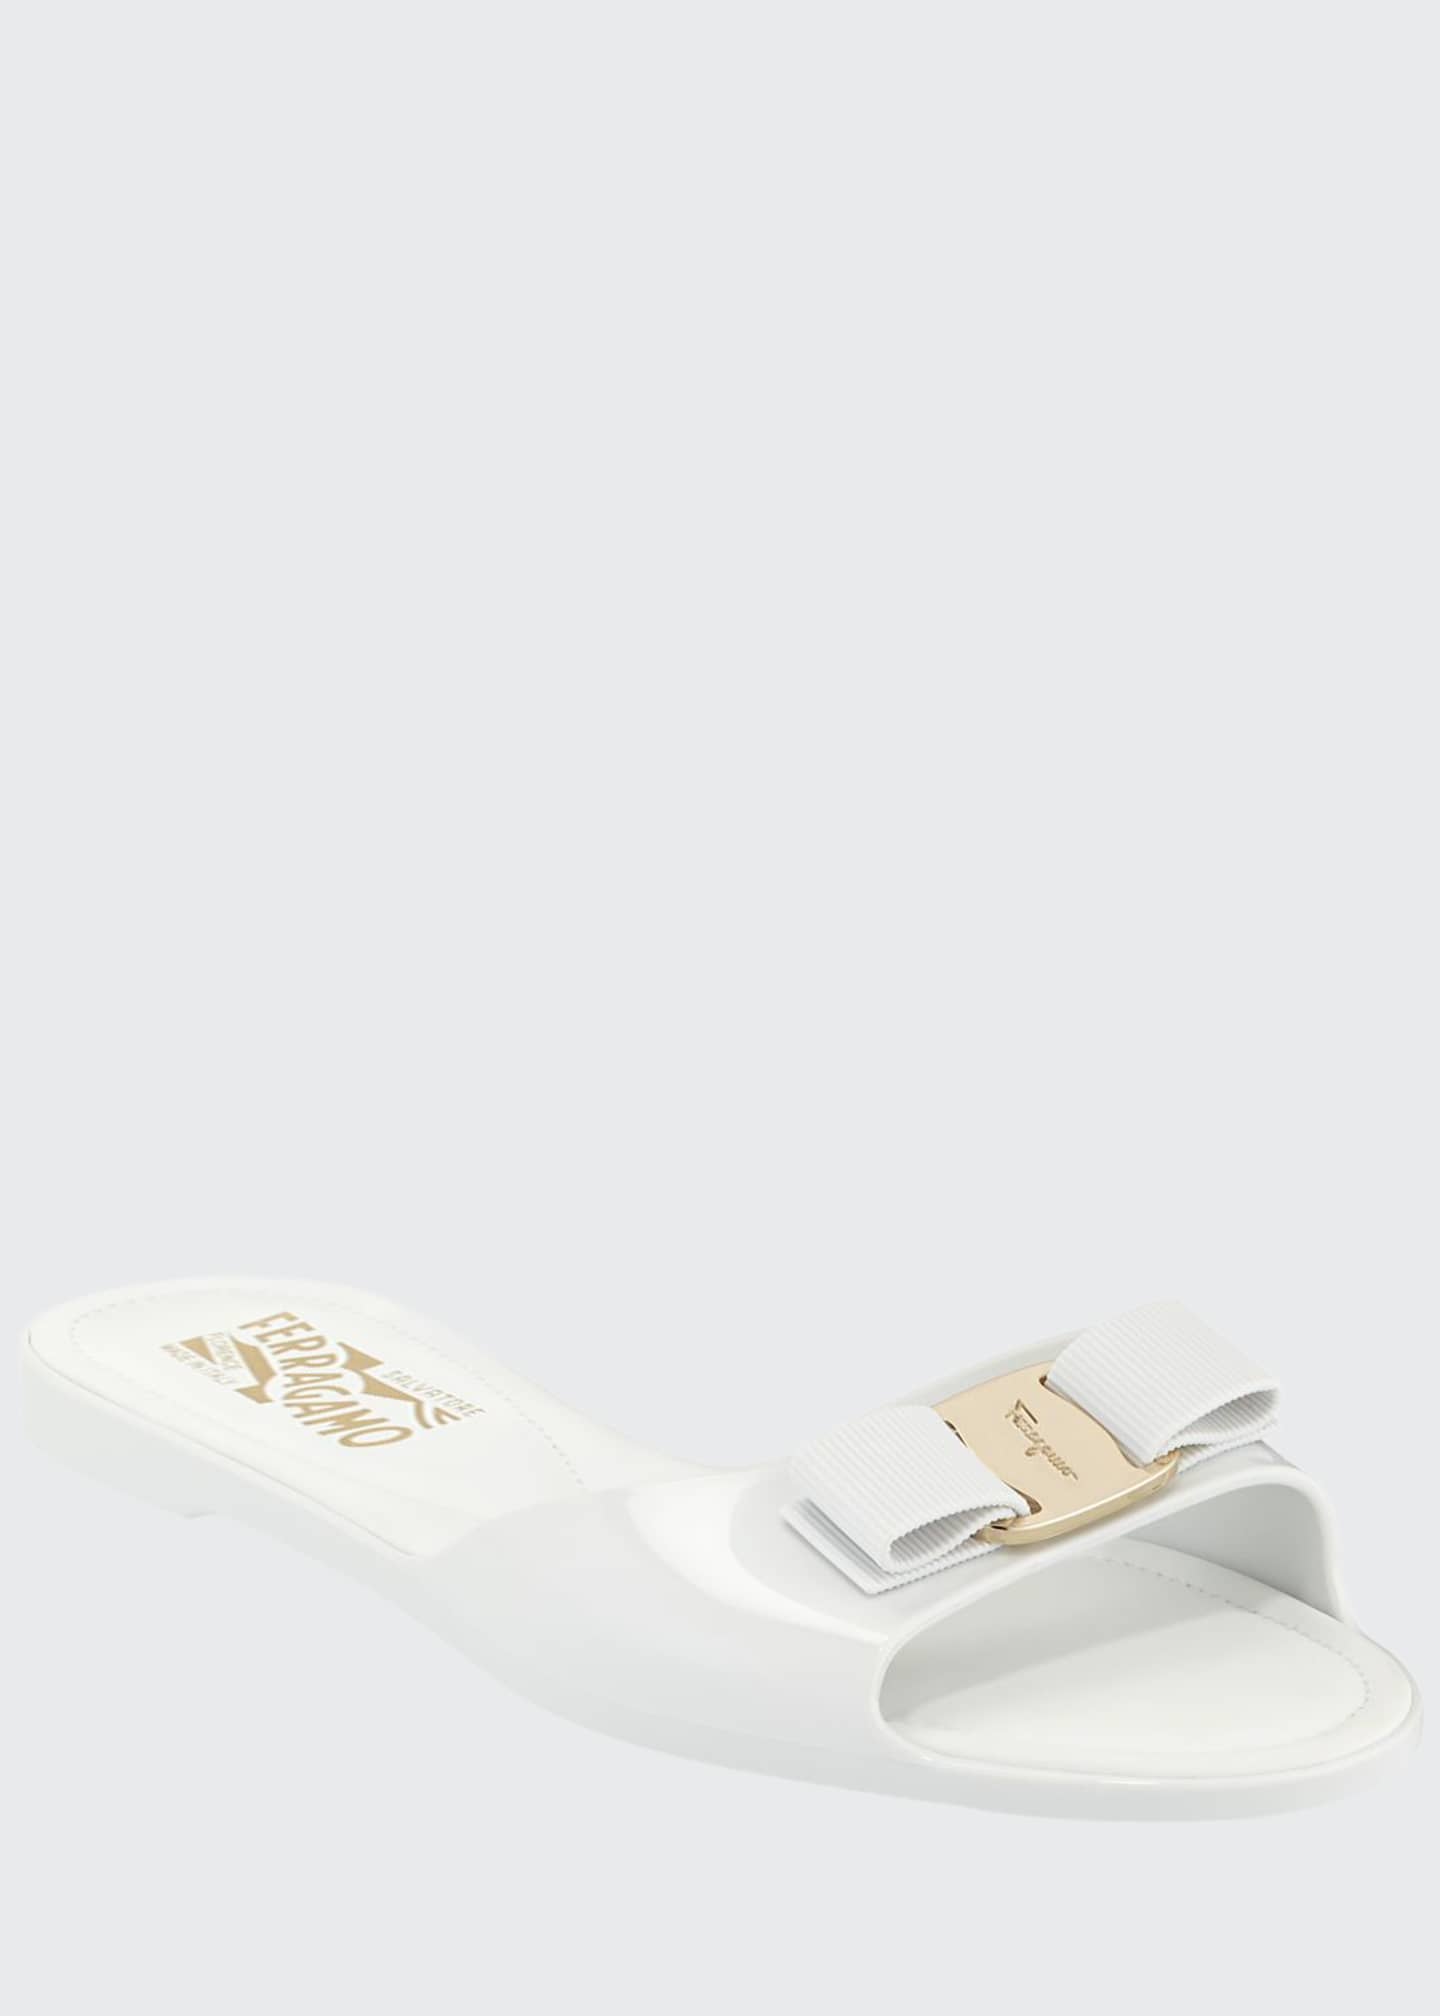 Salvatore Ferragamo Cirella Flat PVC Jelly Bow Slide Sandals, White ...